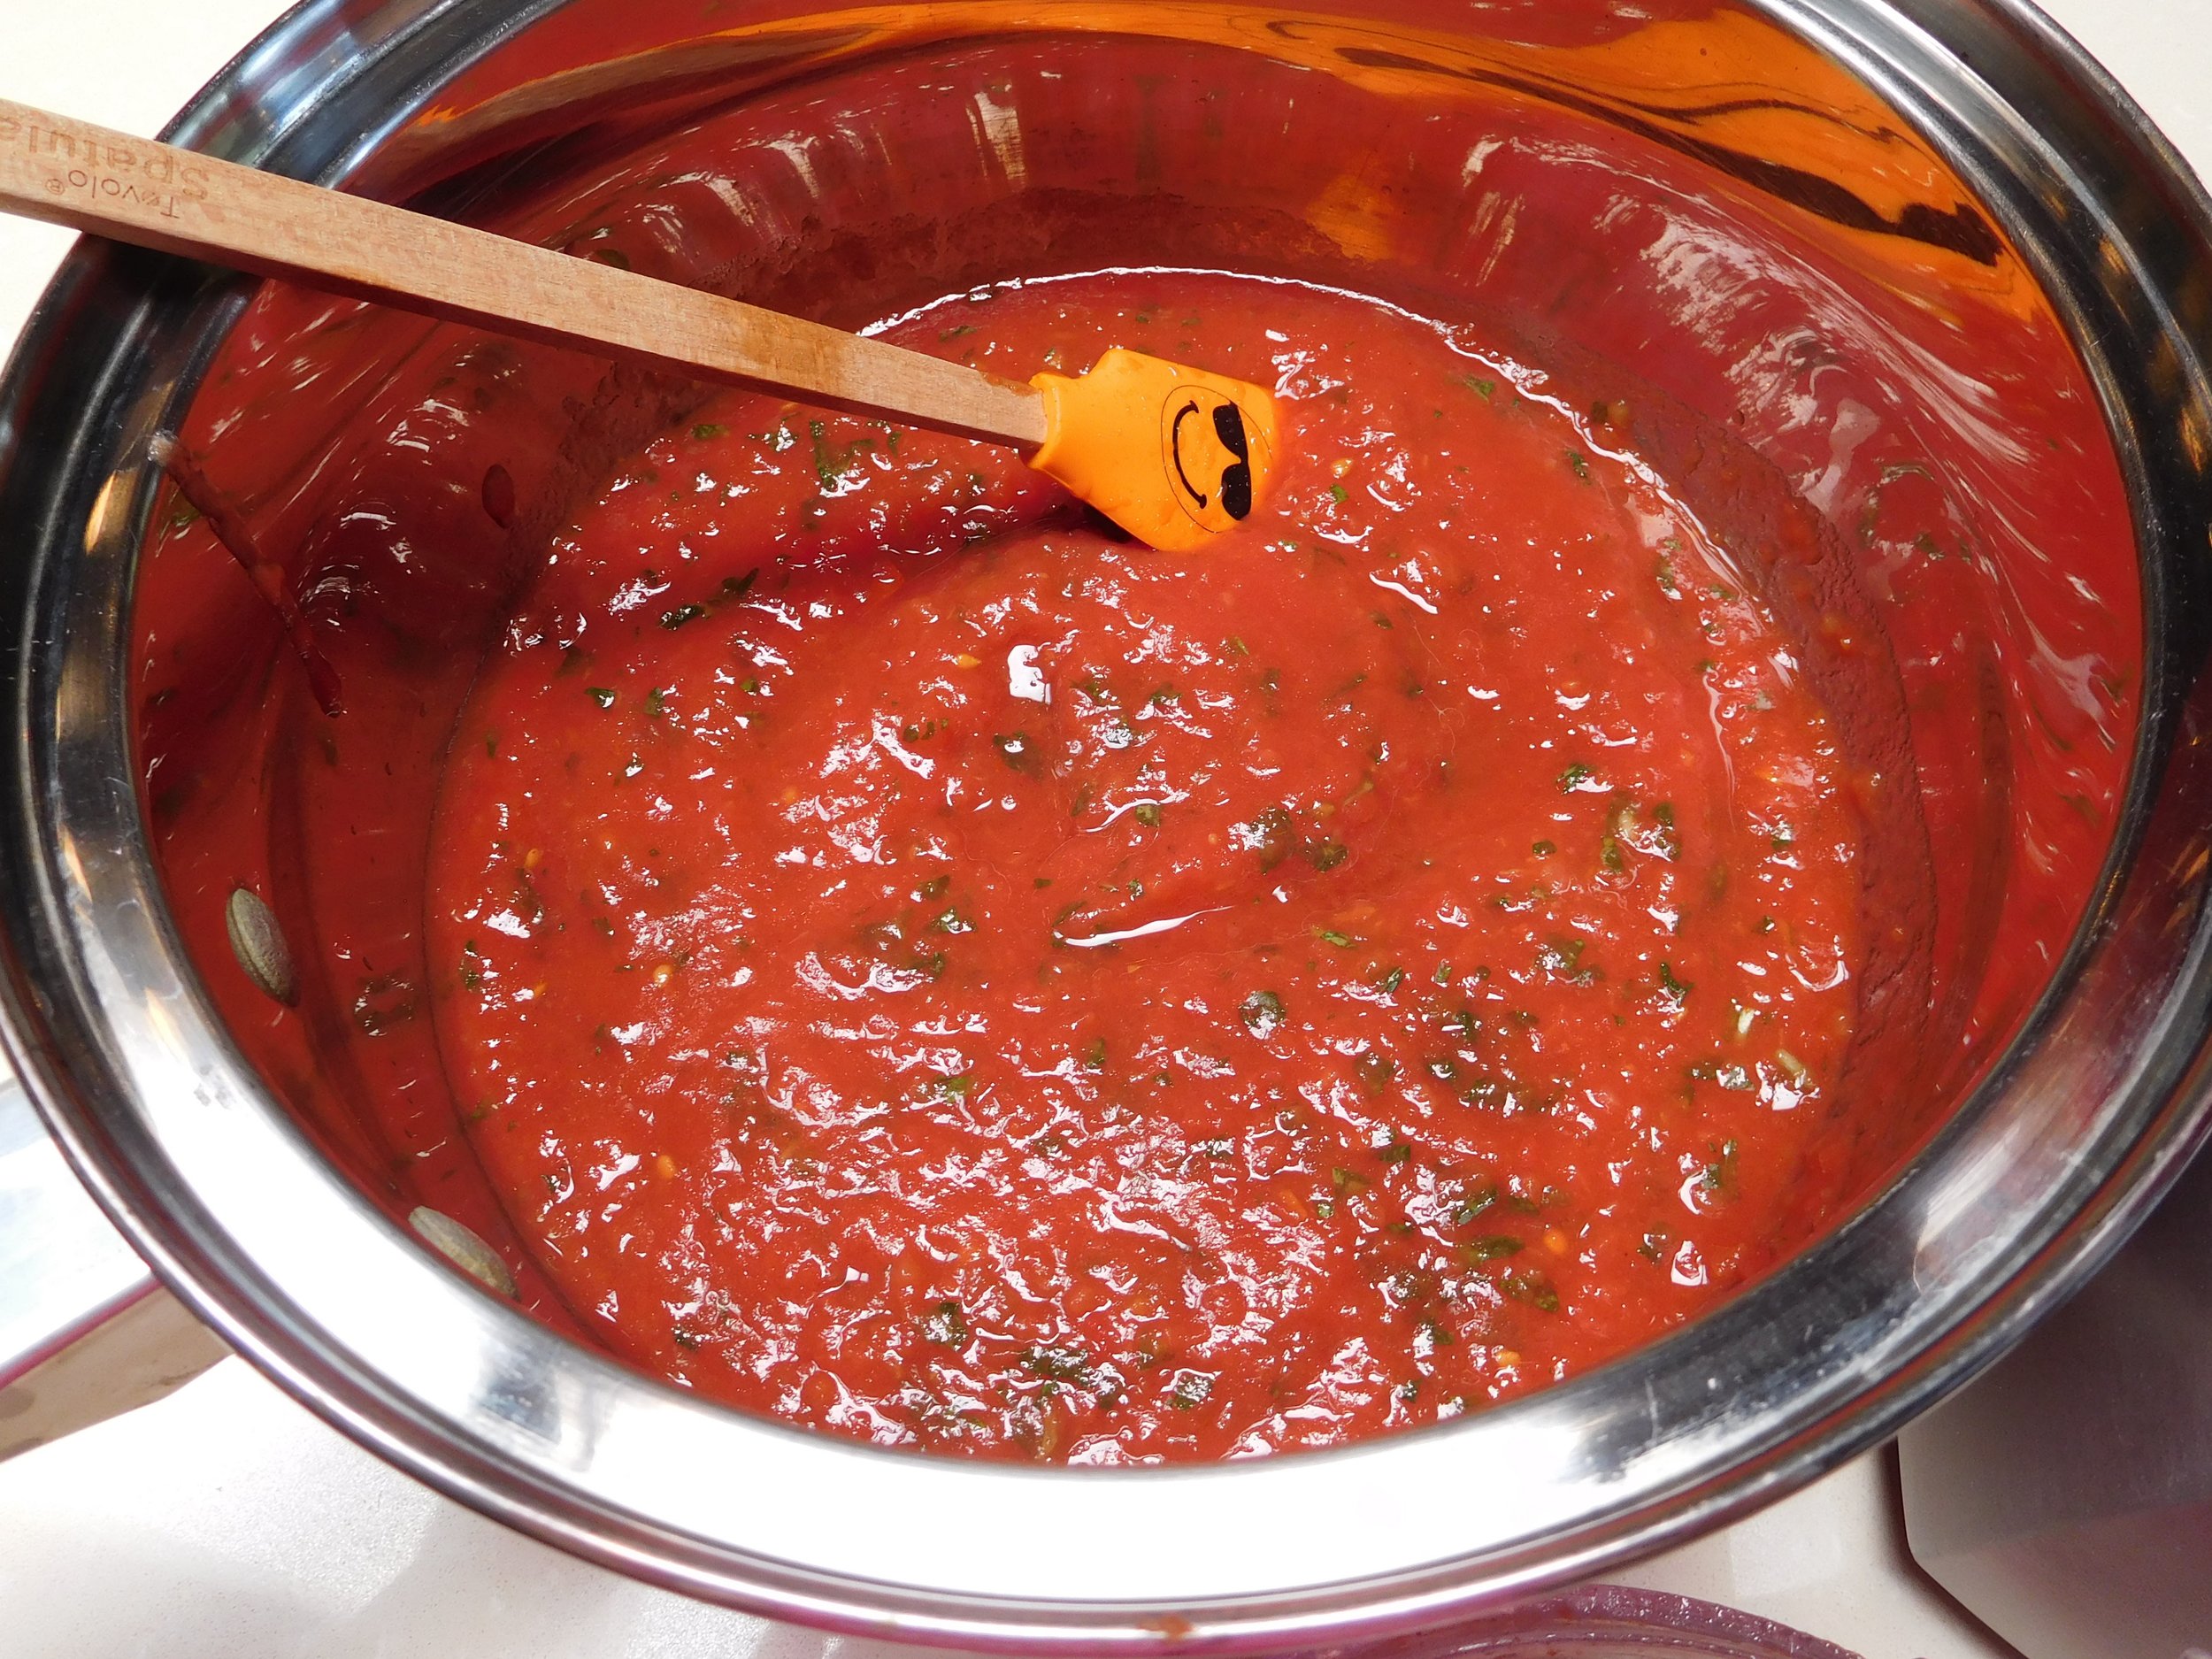 tomato basil reduction in pot.JPG